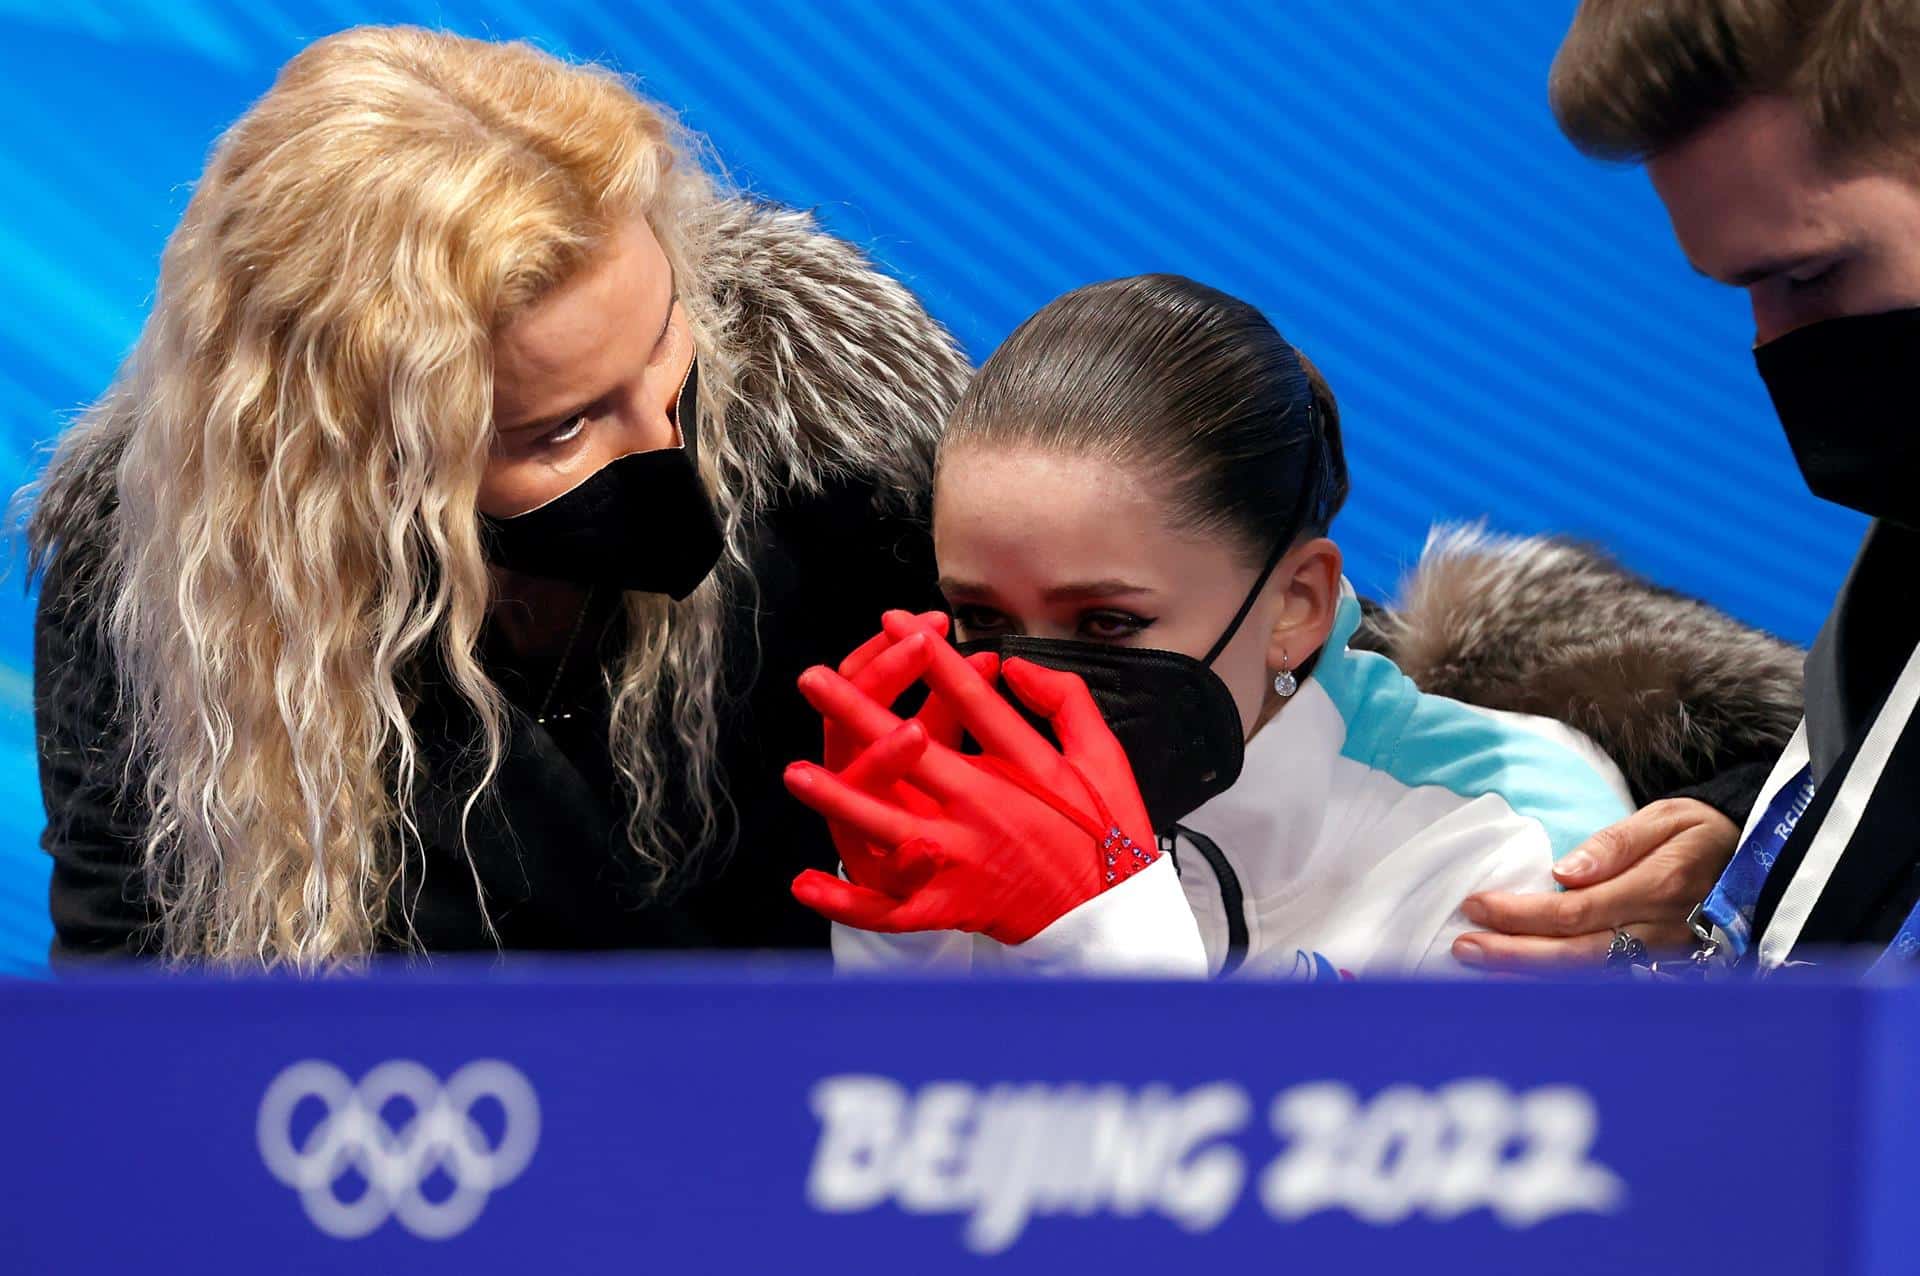 La entrenadora Eteri Tutberidze consuela a Kamila Valieva, que rompió a llorar tras la final de patinaje artístico en Pekín 2022.